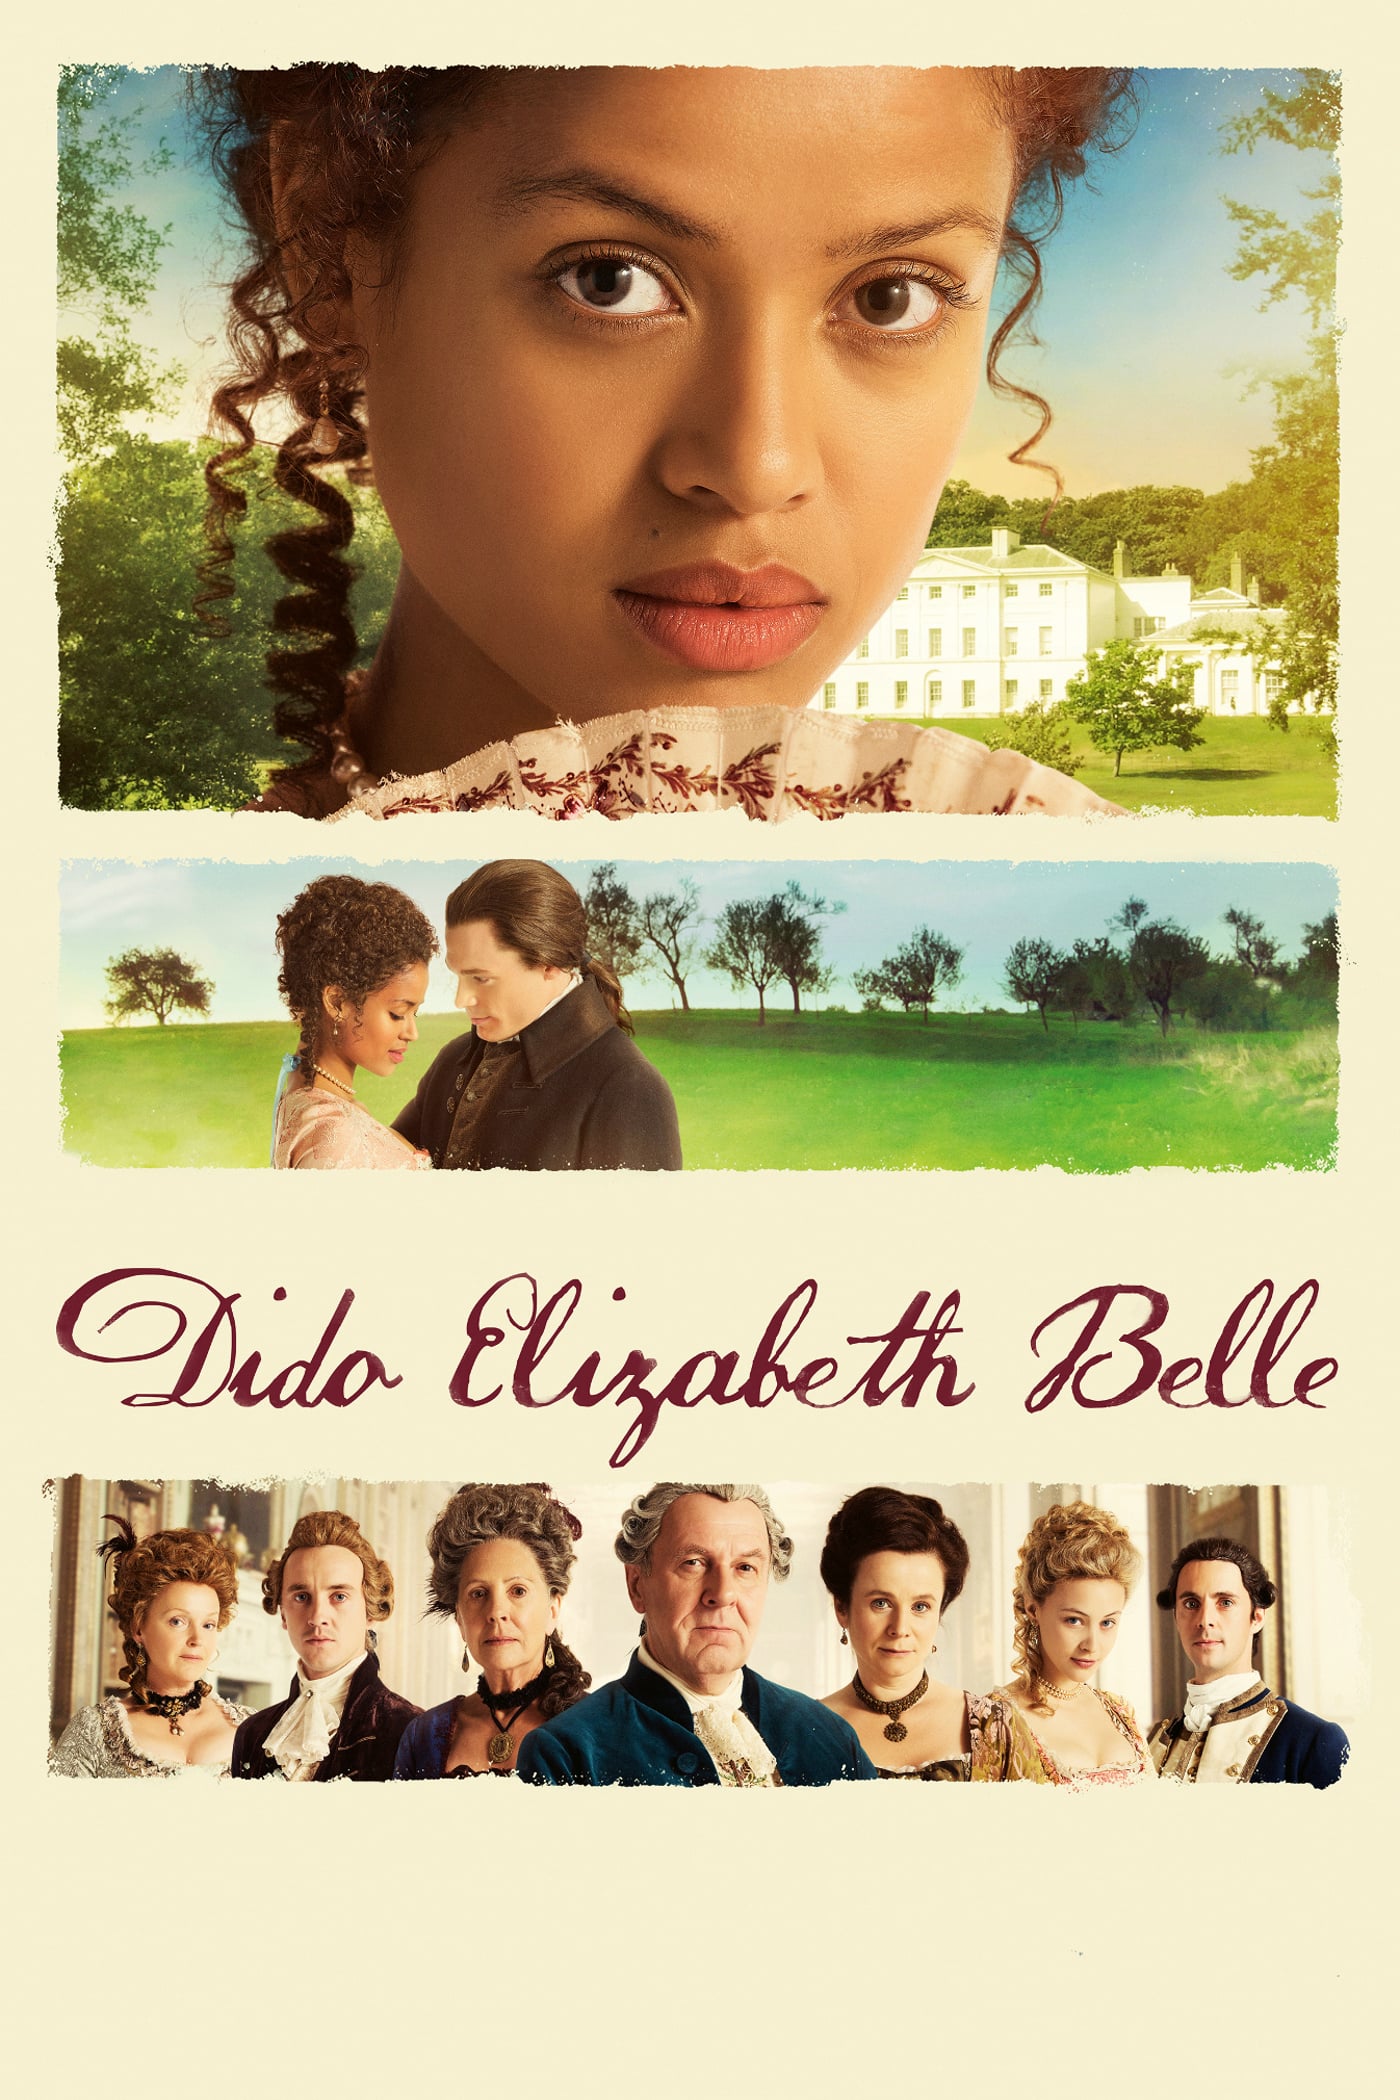 Plakat von "Dido Elizabeth Belle"